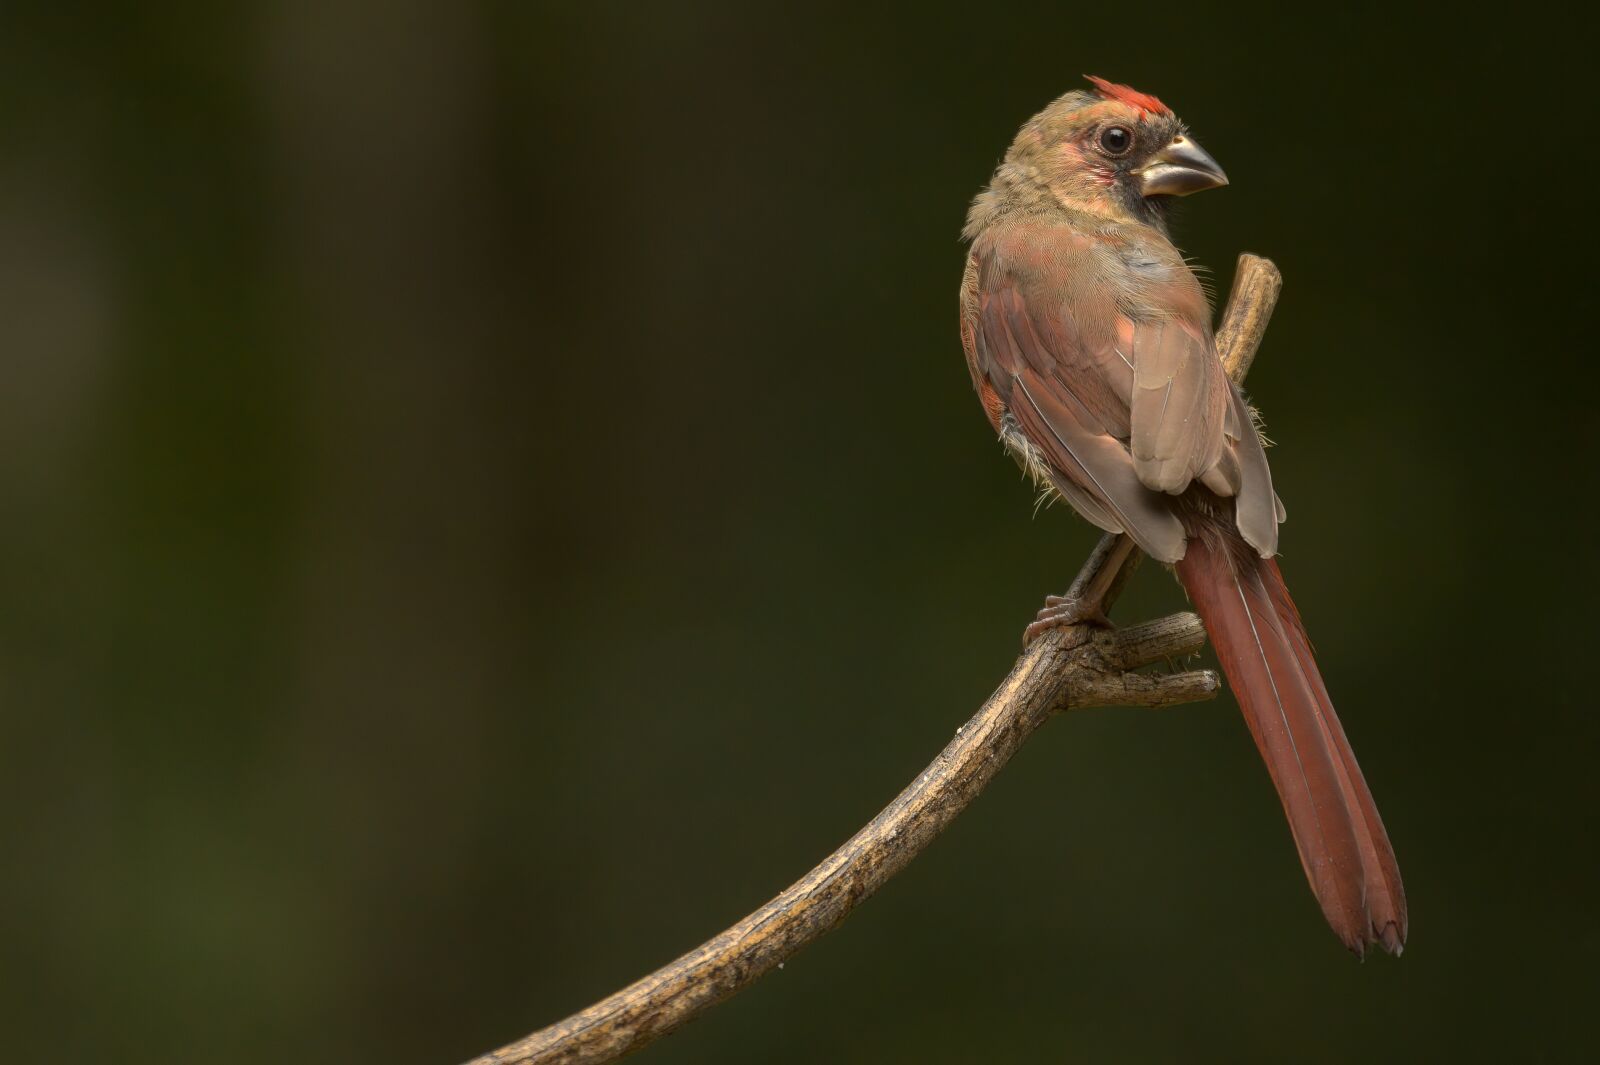 Canon EOS R sample photo. Bird, perched, perching bird photography